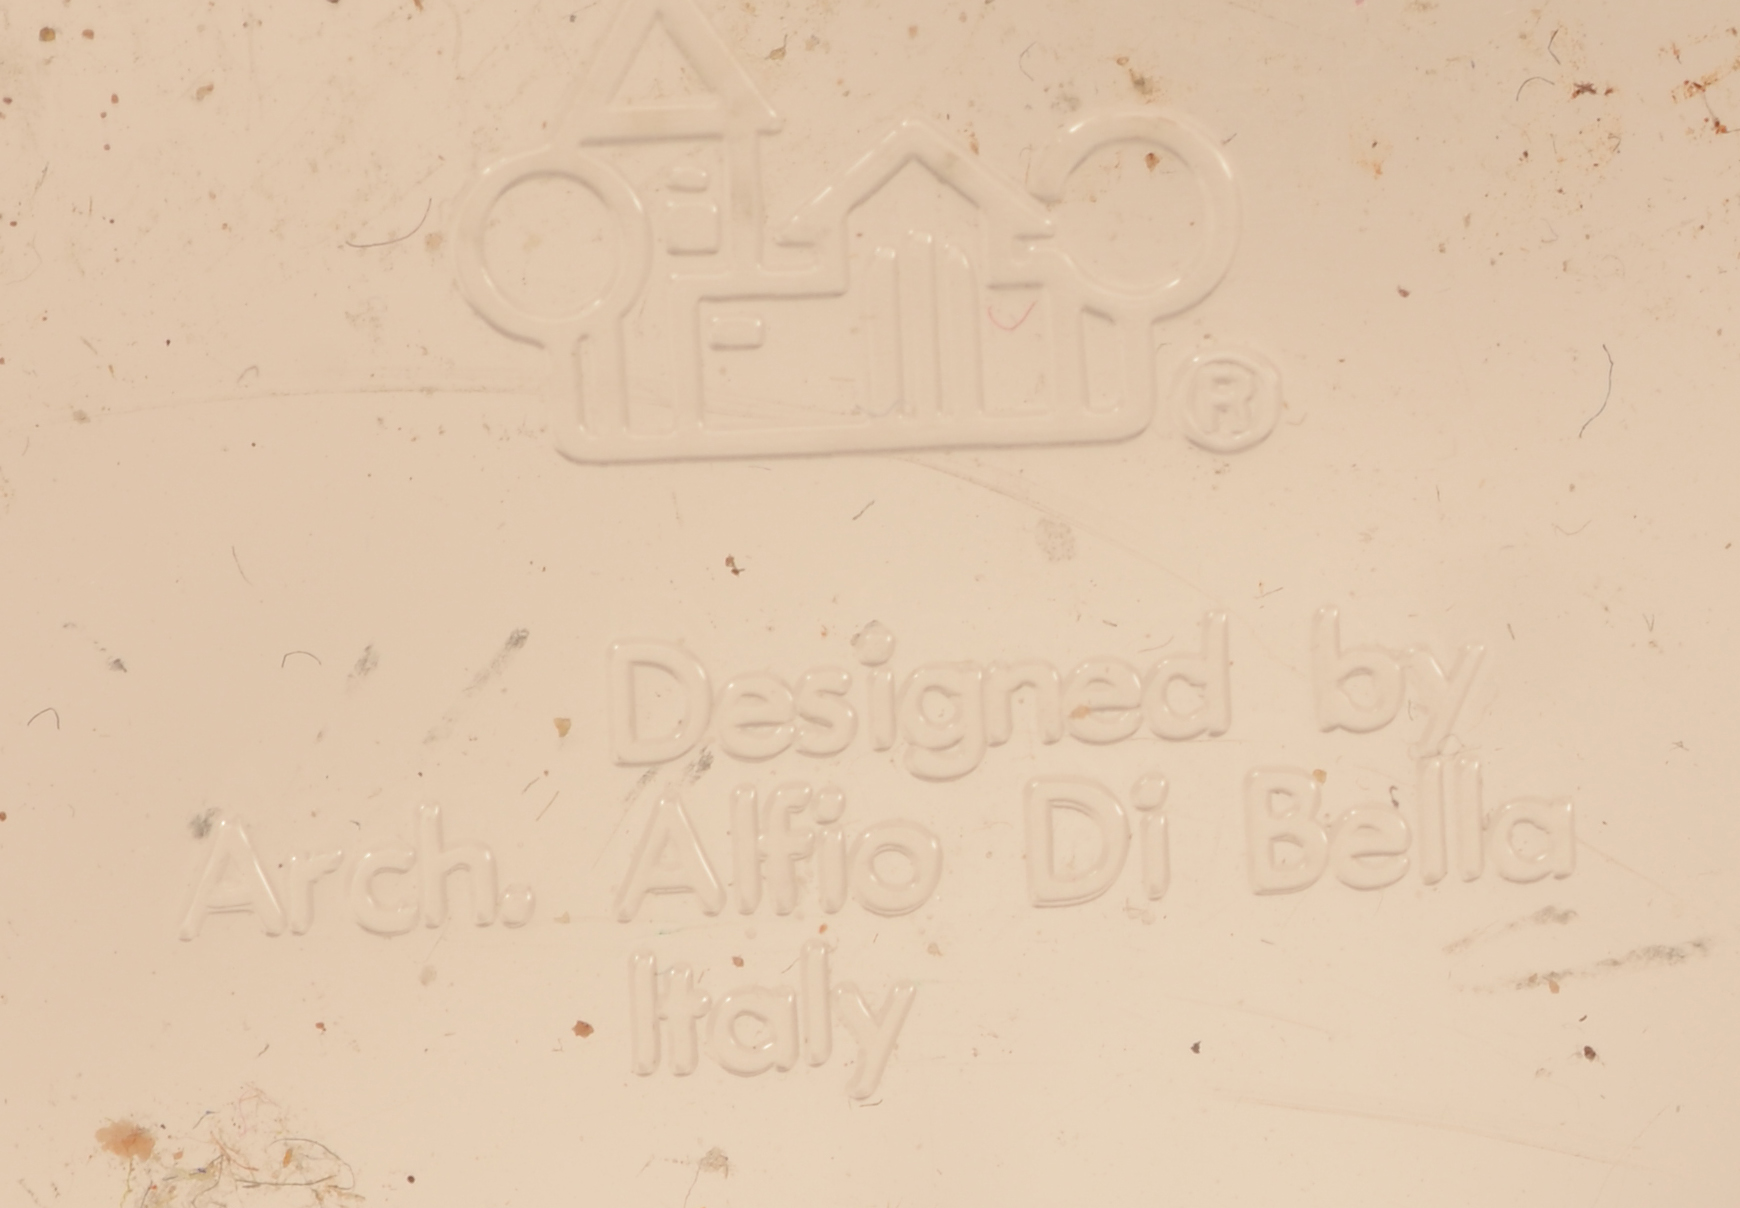 Alfio Di Bella — Markon the bottom of the piece